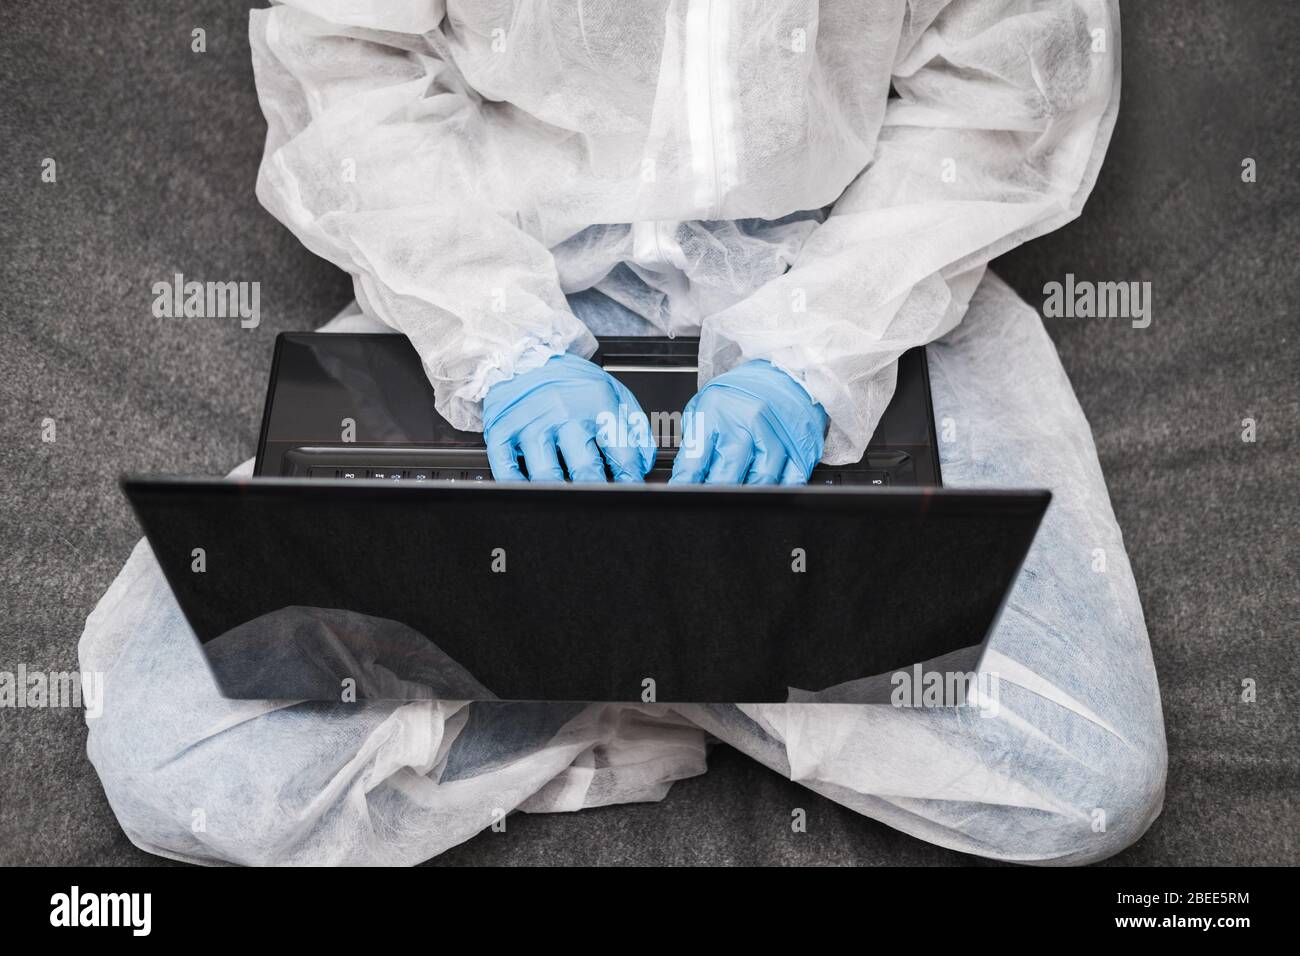 Persona in tuta protettiva bianca traslucida, guanti in gomma blu, maschera medica si siede al tavolo a casa e lavora o studia sul laptop durante la quarantena. Foto Stock